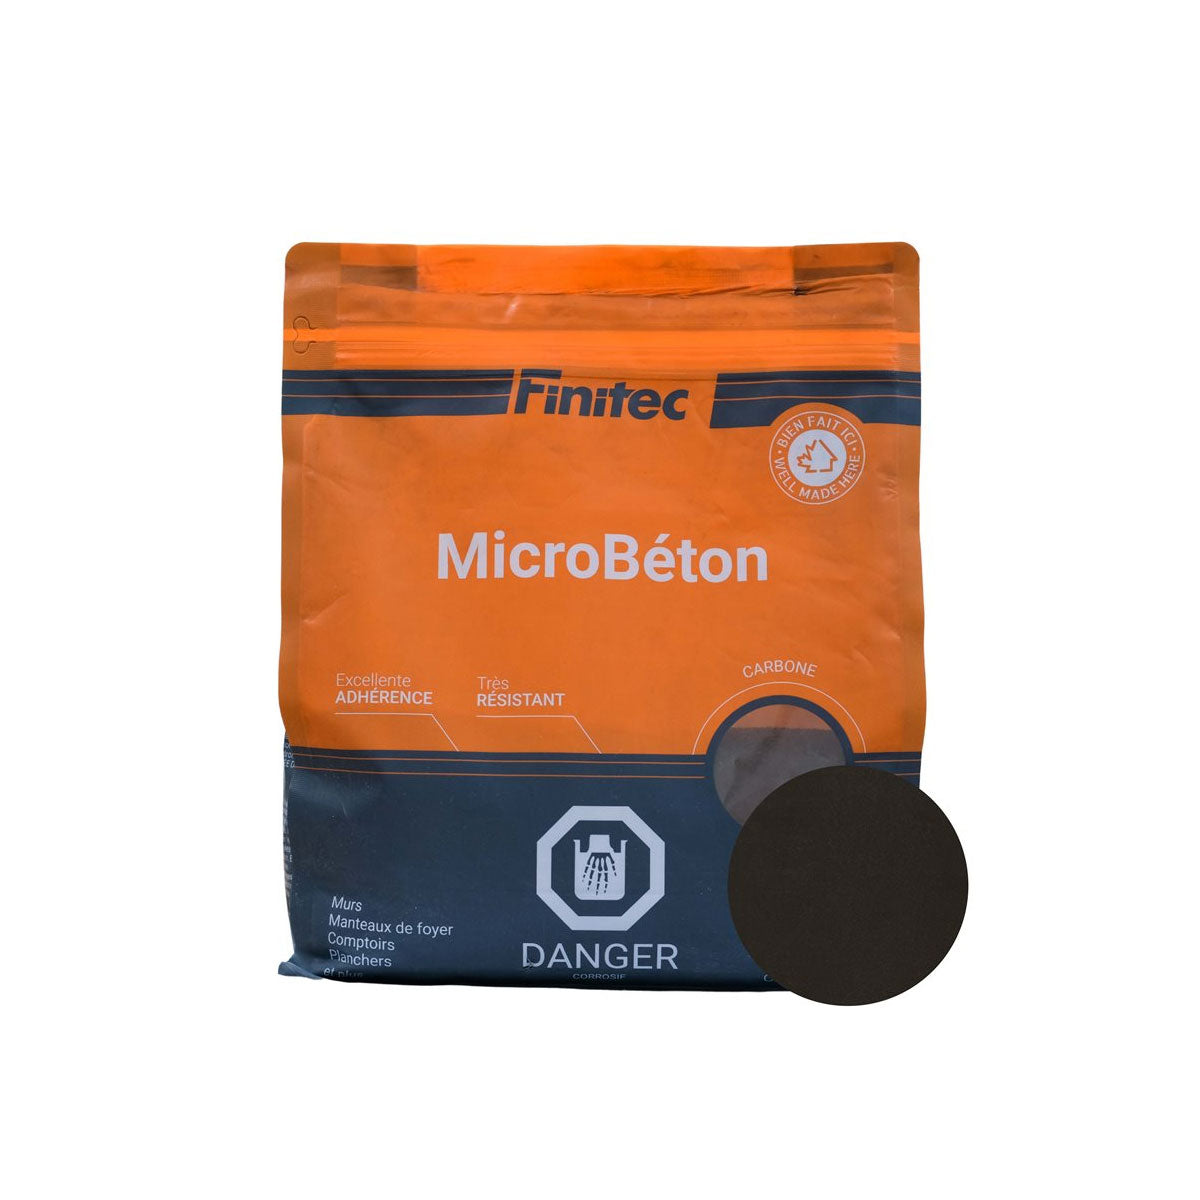 MicroBéton Finitec various colors 3.5 kg and 18 kg